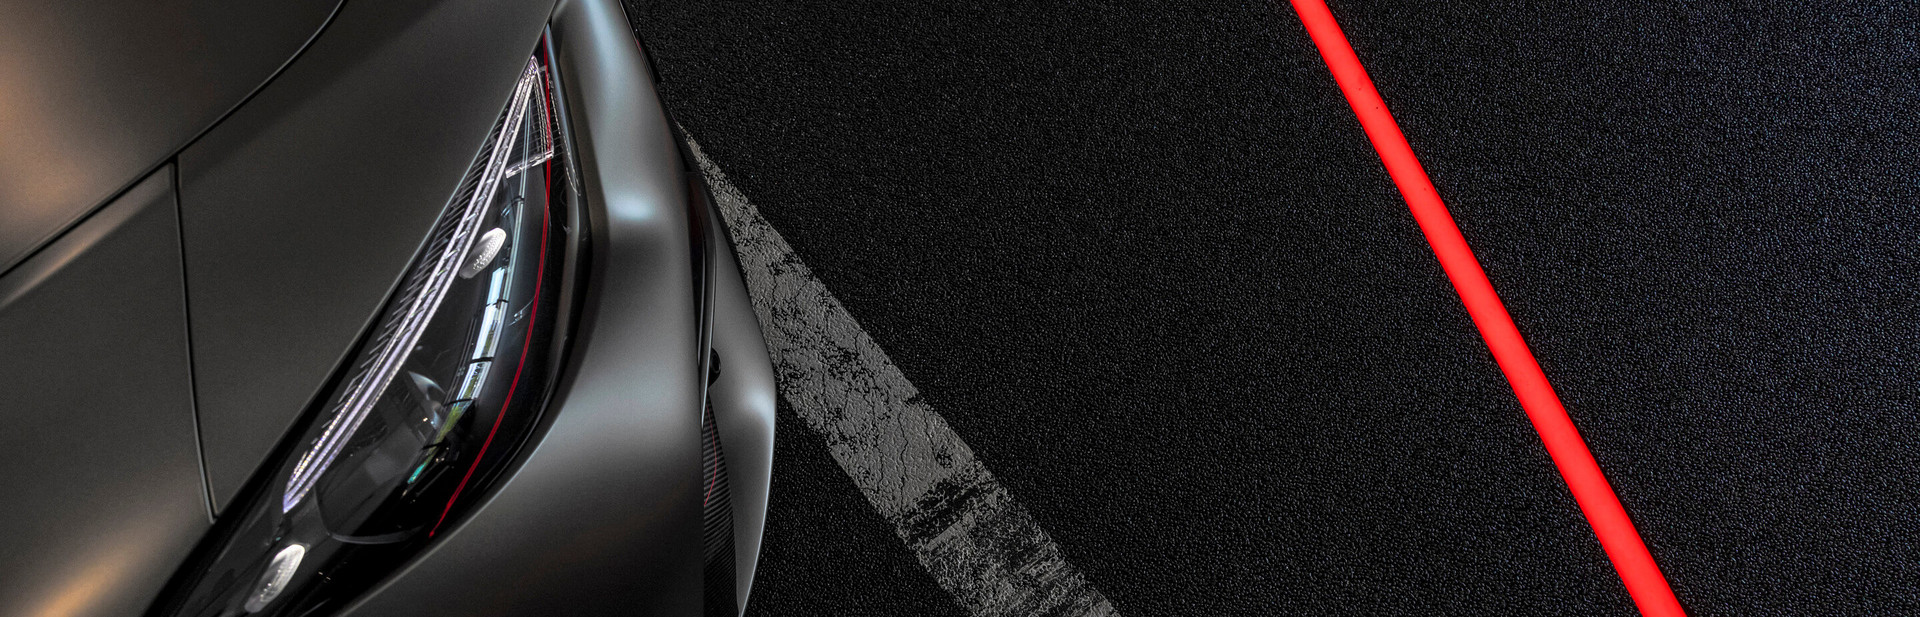 Ausschnitt eines eleganten Autos mit fokussierten Scheinwerfern, geparkt auf einem glitzernden schwarzen Untergrund mit einer kontrastreichen roten Linie.